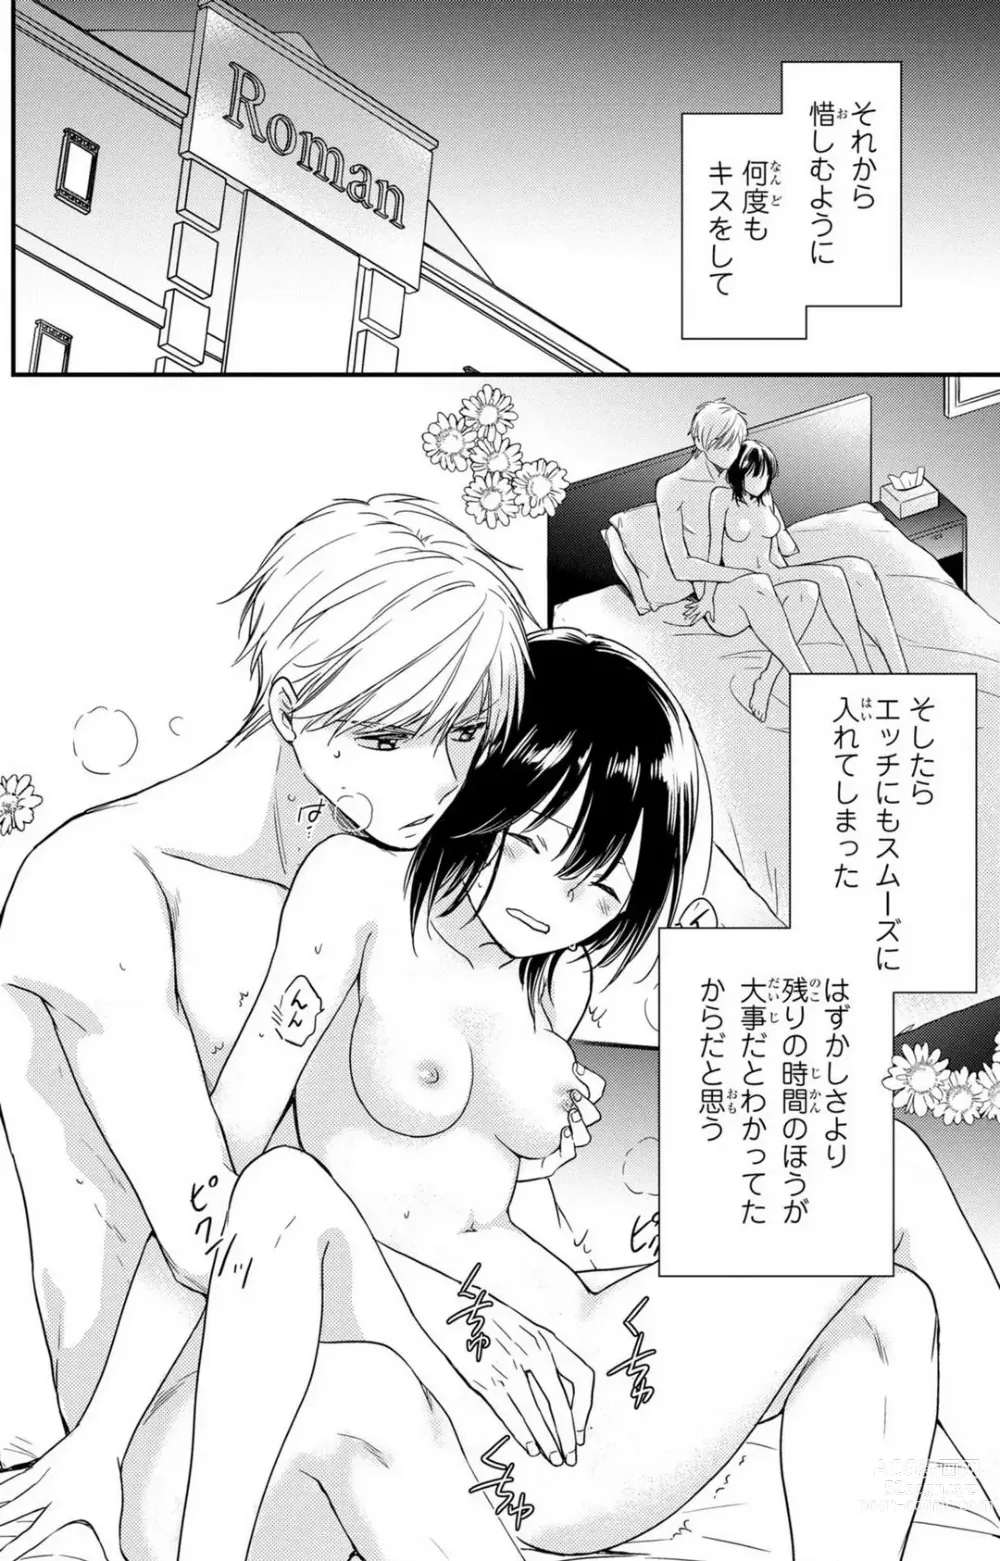 Page 195 of manga Doutei Danshi Nyotaika